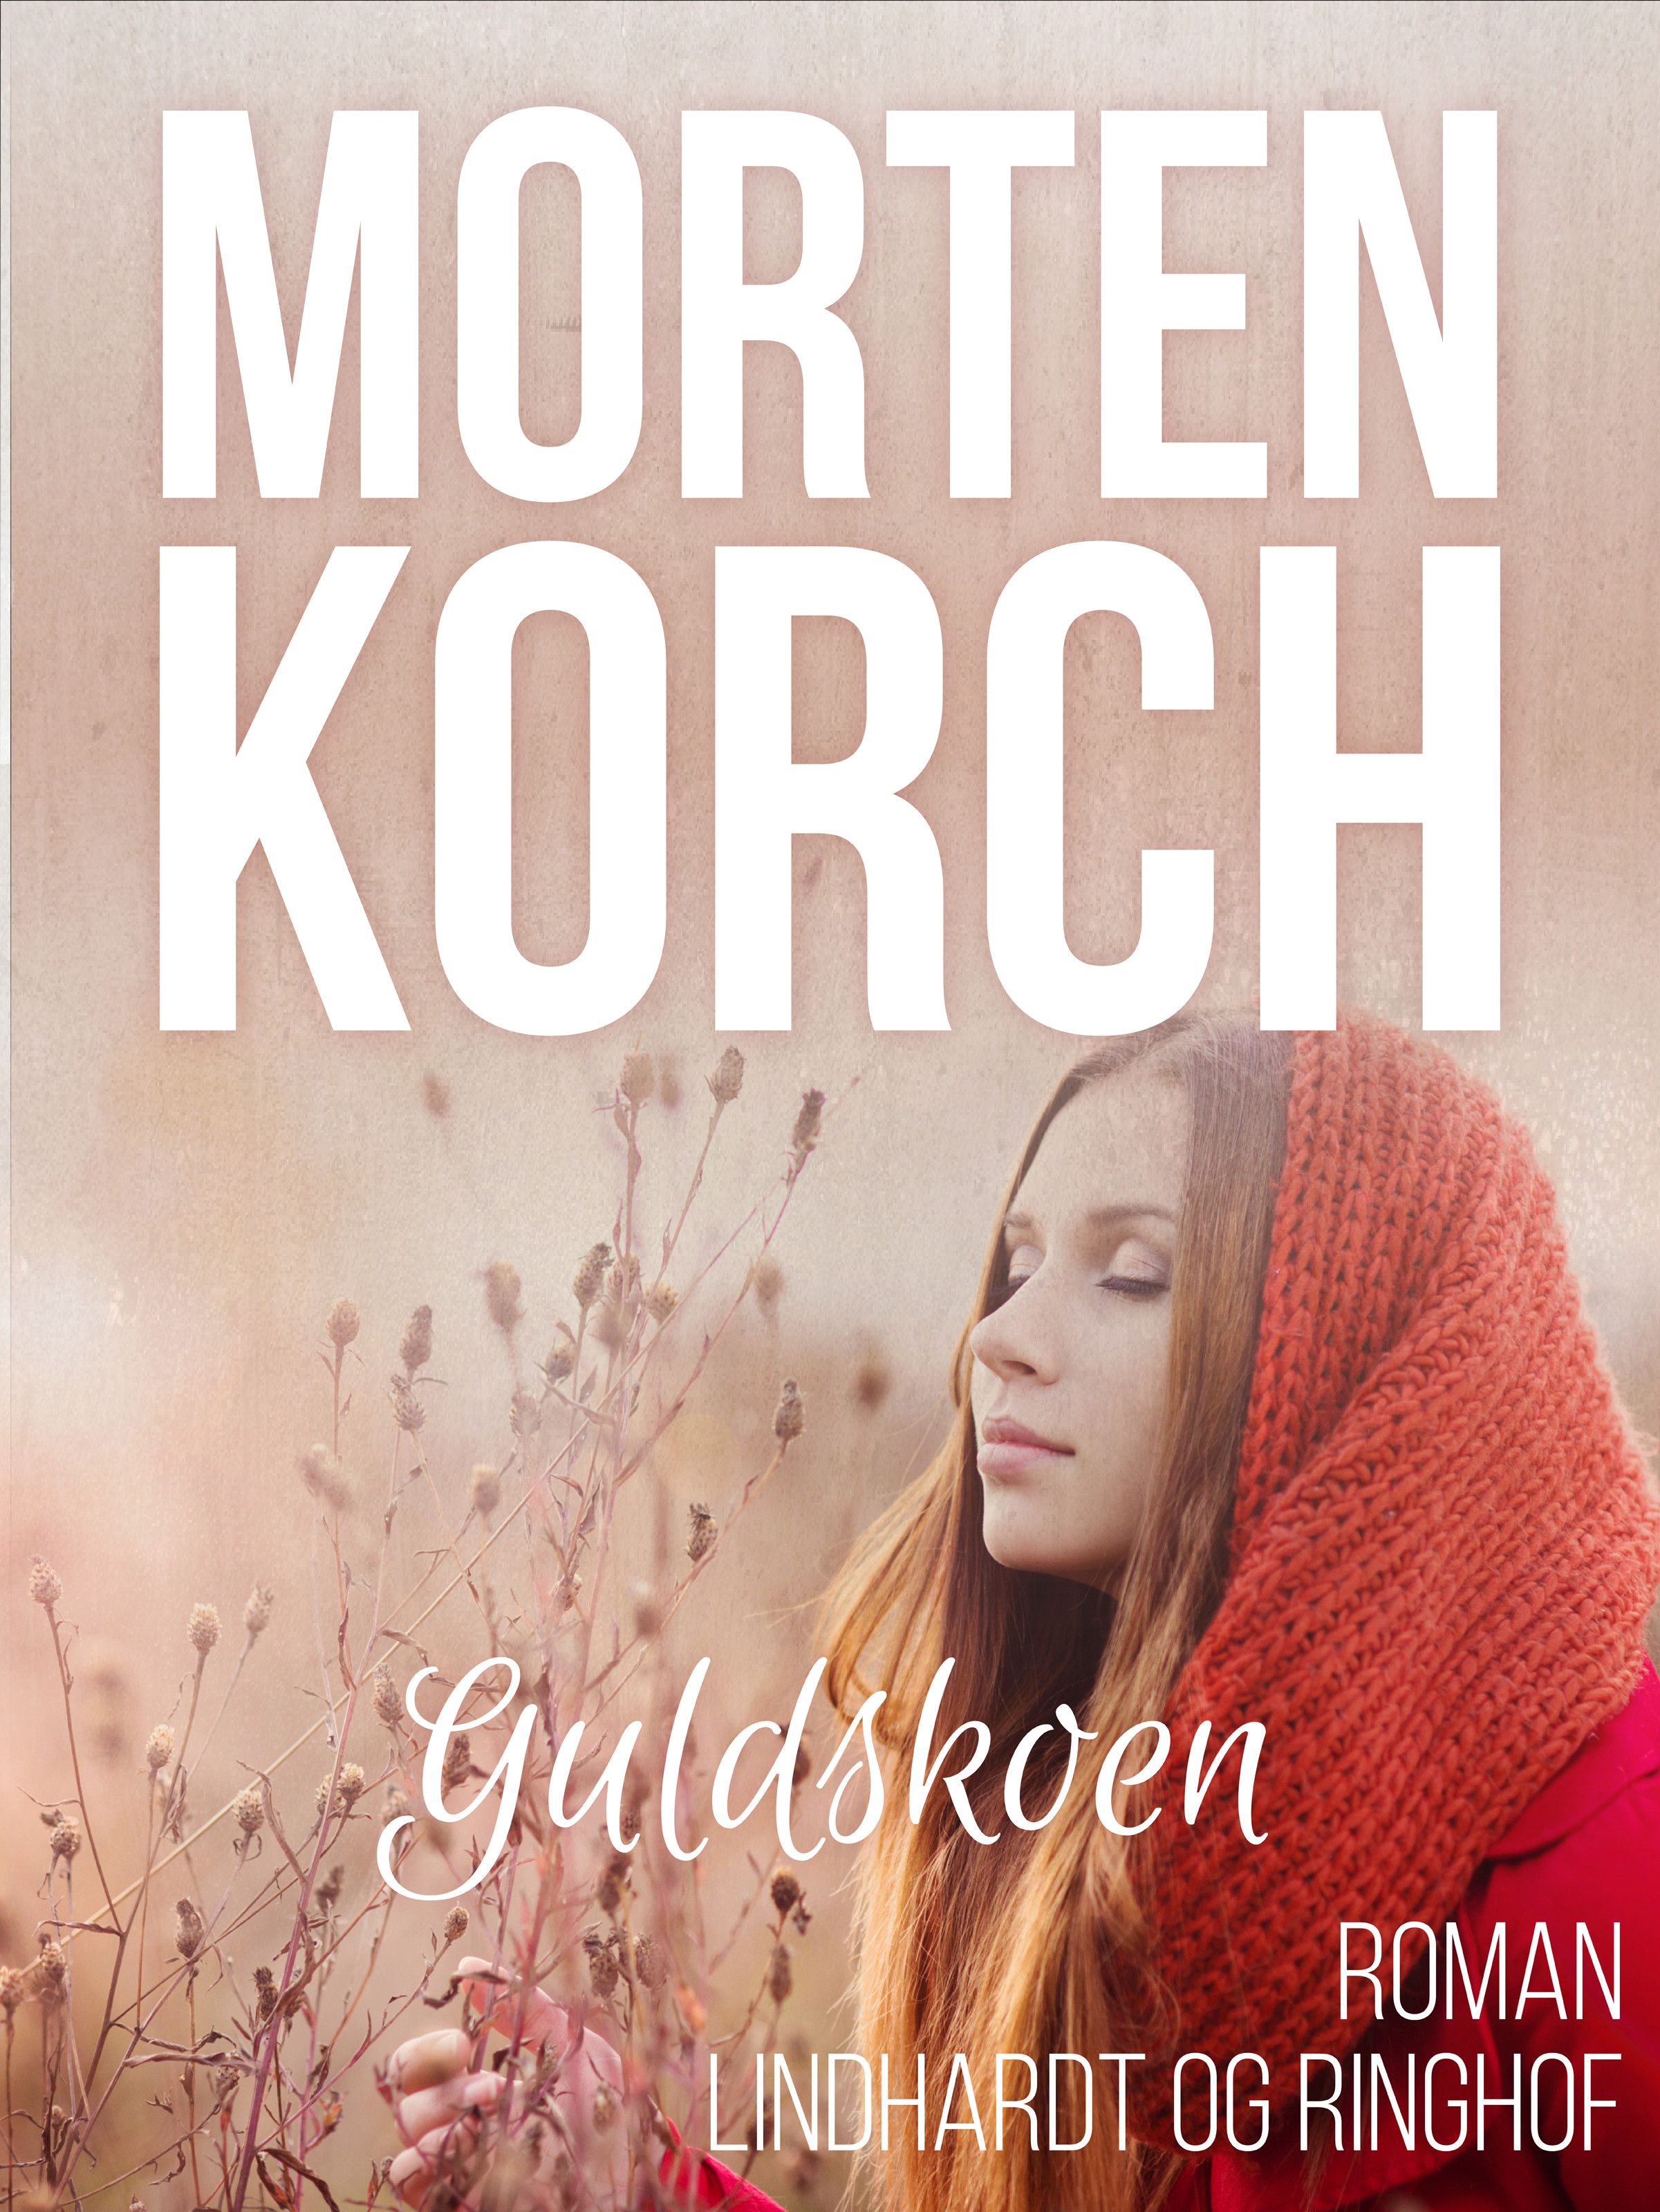 Guldskoen, lydbog af Morten Korch